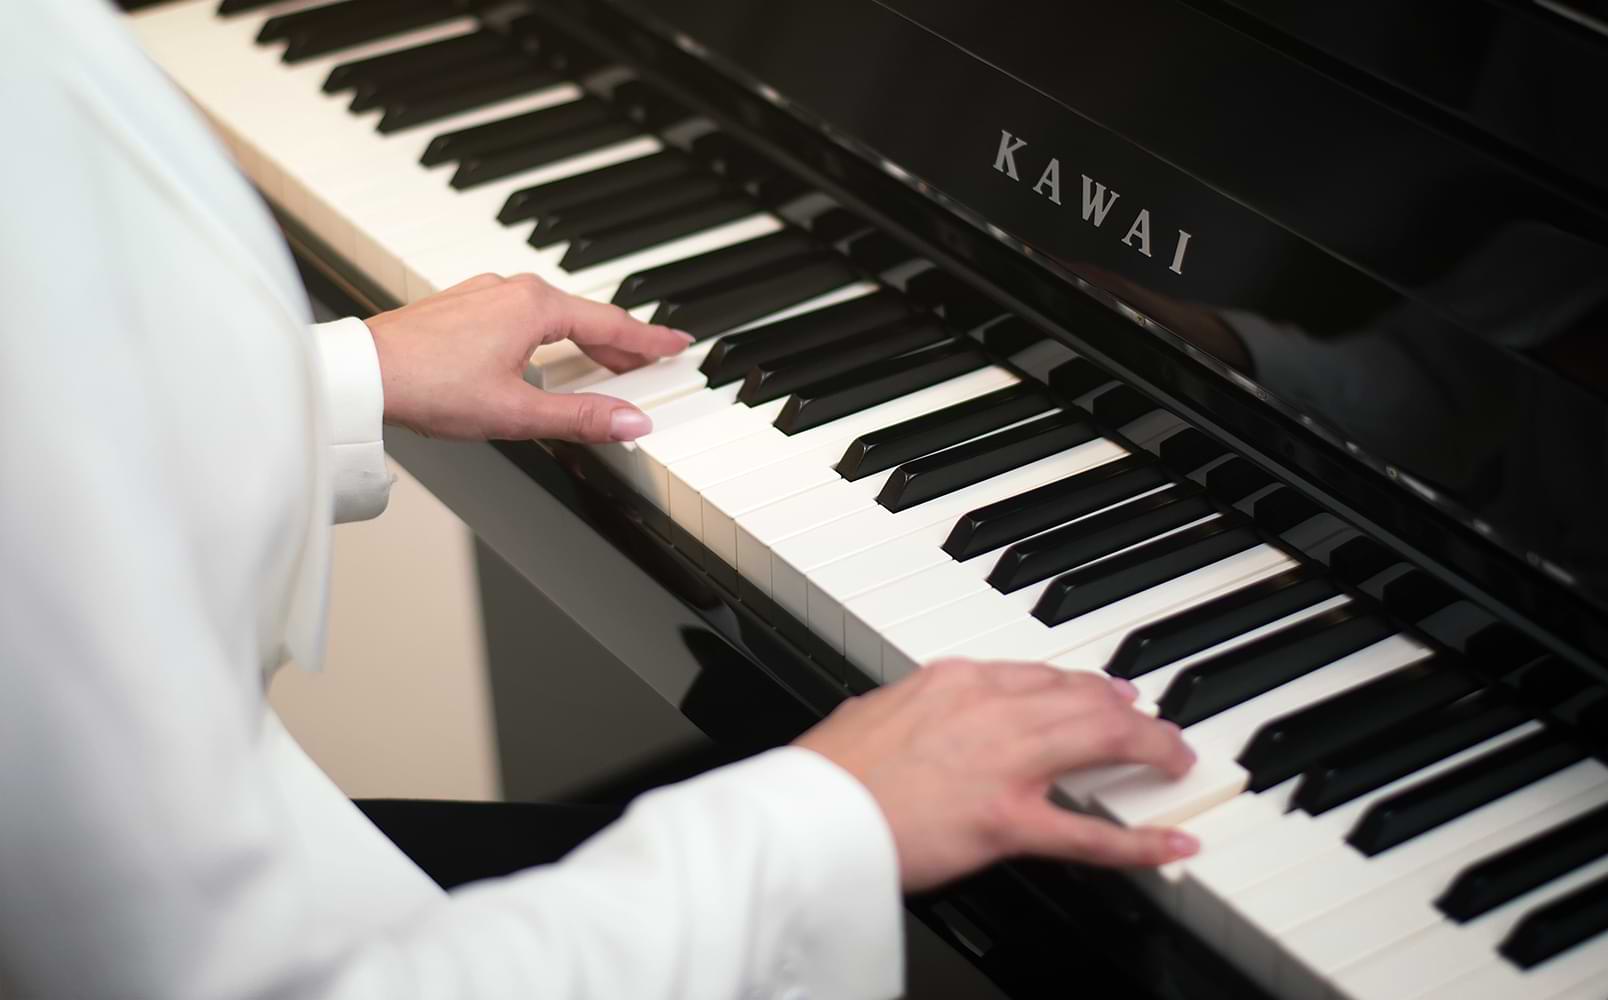 Kawai công bố 2 mẫu đàn piano điện mới dòng Concert Artist CA901 & CA701 